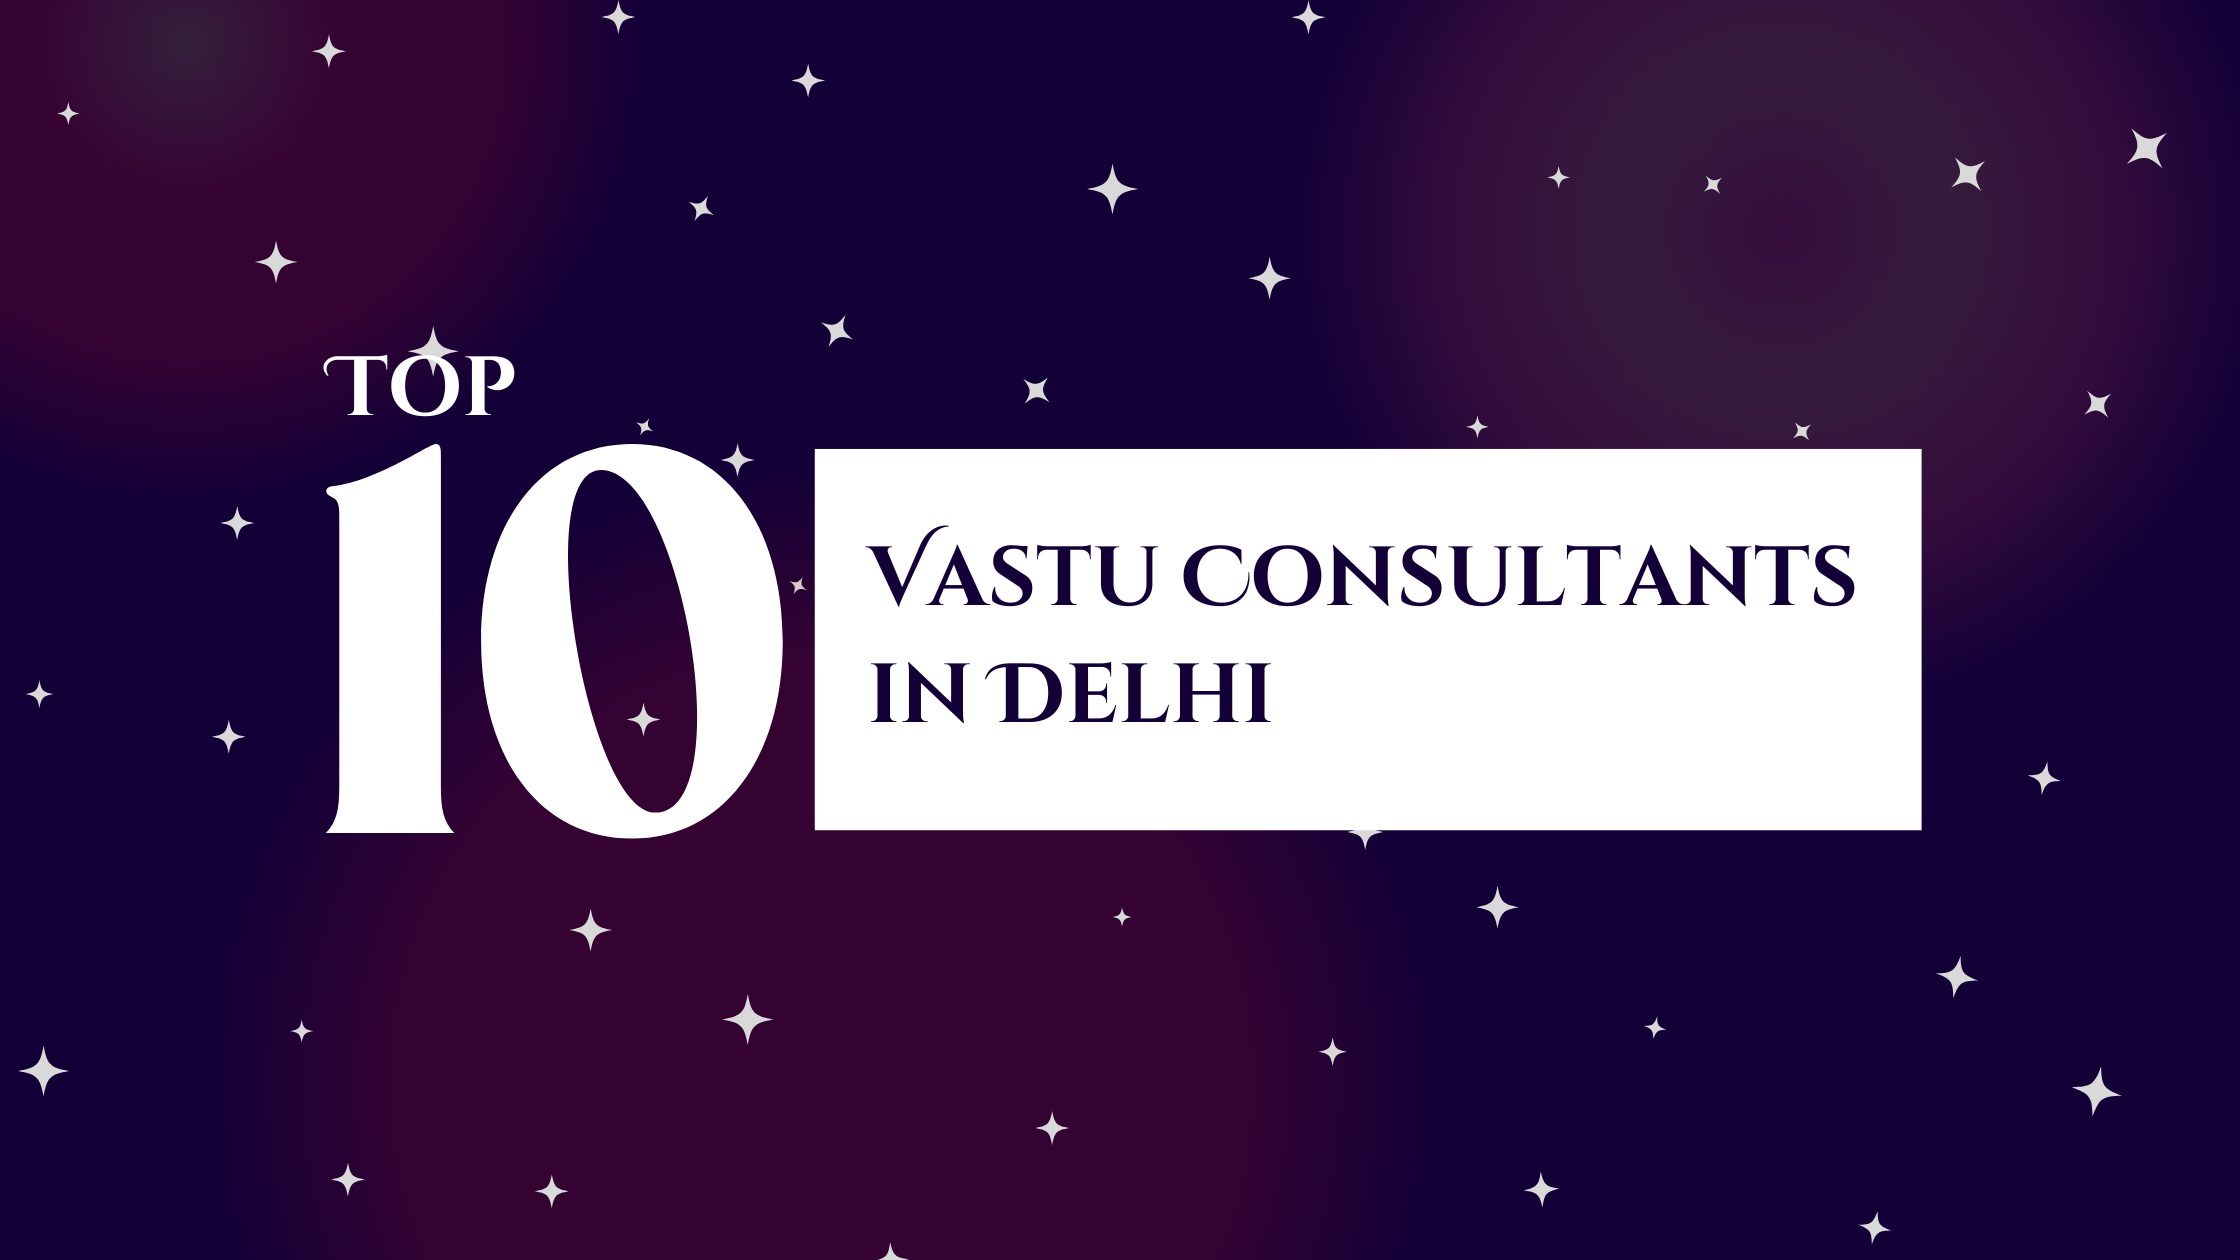 Top 10 Vastu Consultants in Delhi - ProVastu